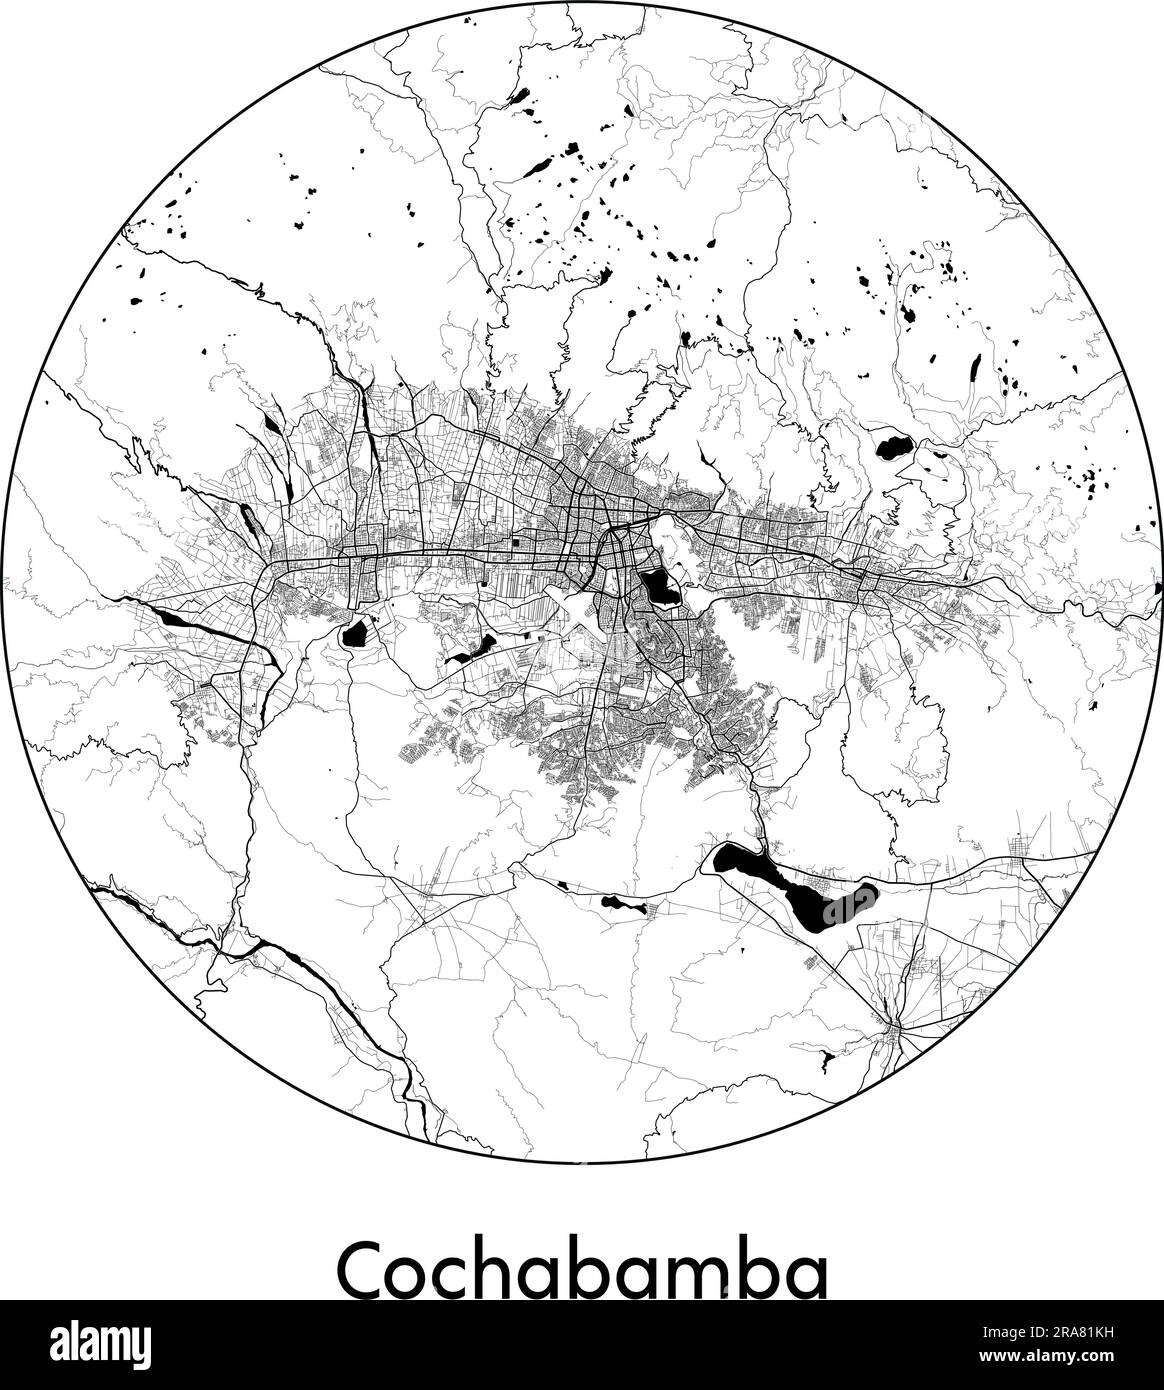 Carte de la ville Cochabamba Bolivie Amérique du Sud illustration vectorielle noir blanc Illustration de Vecteur